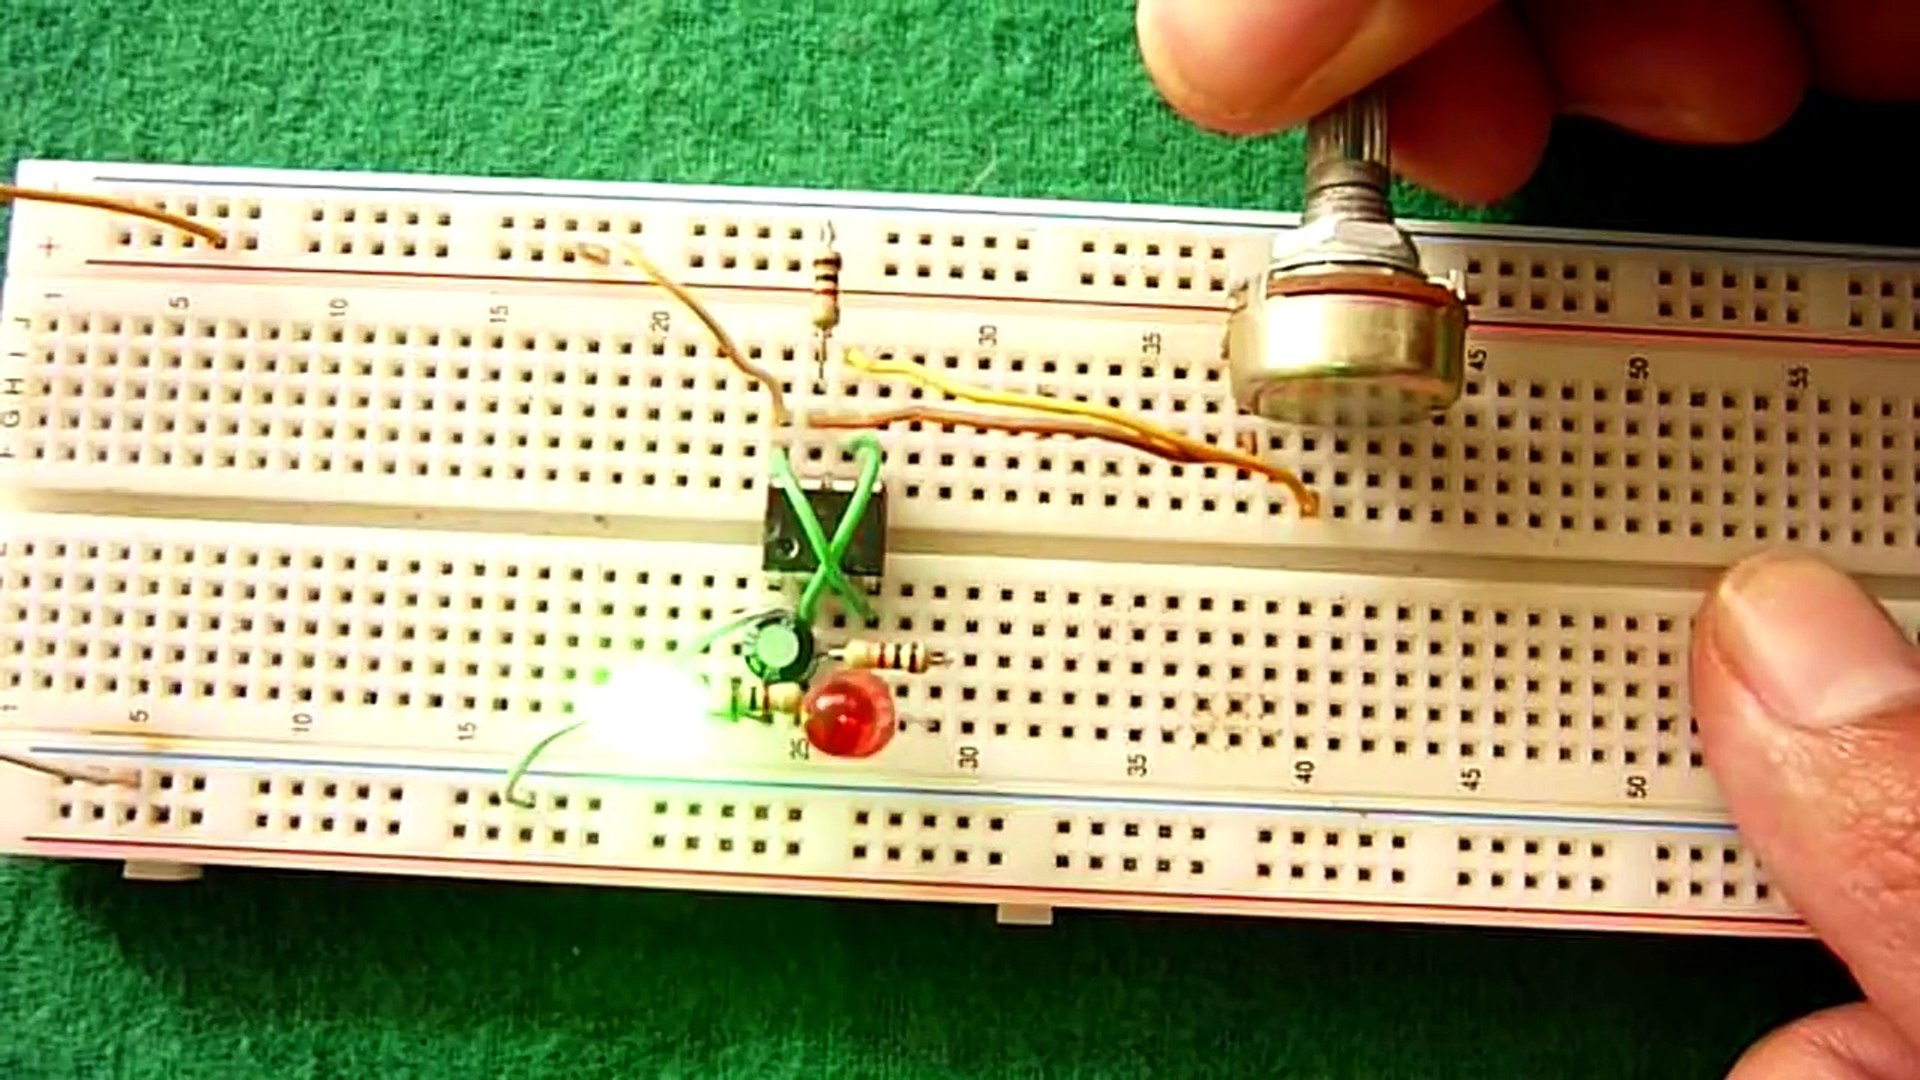 Circuito LED Intermitente Variable (muy fácil de hacer) – Видео Dailymotion